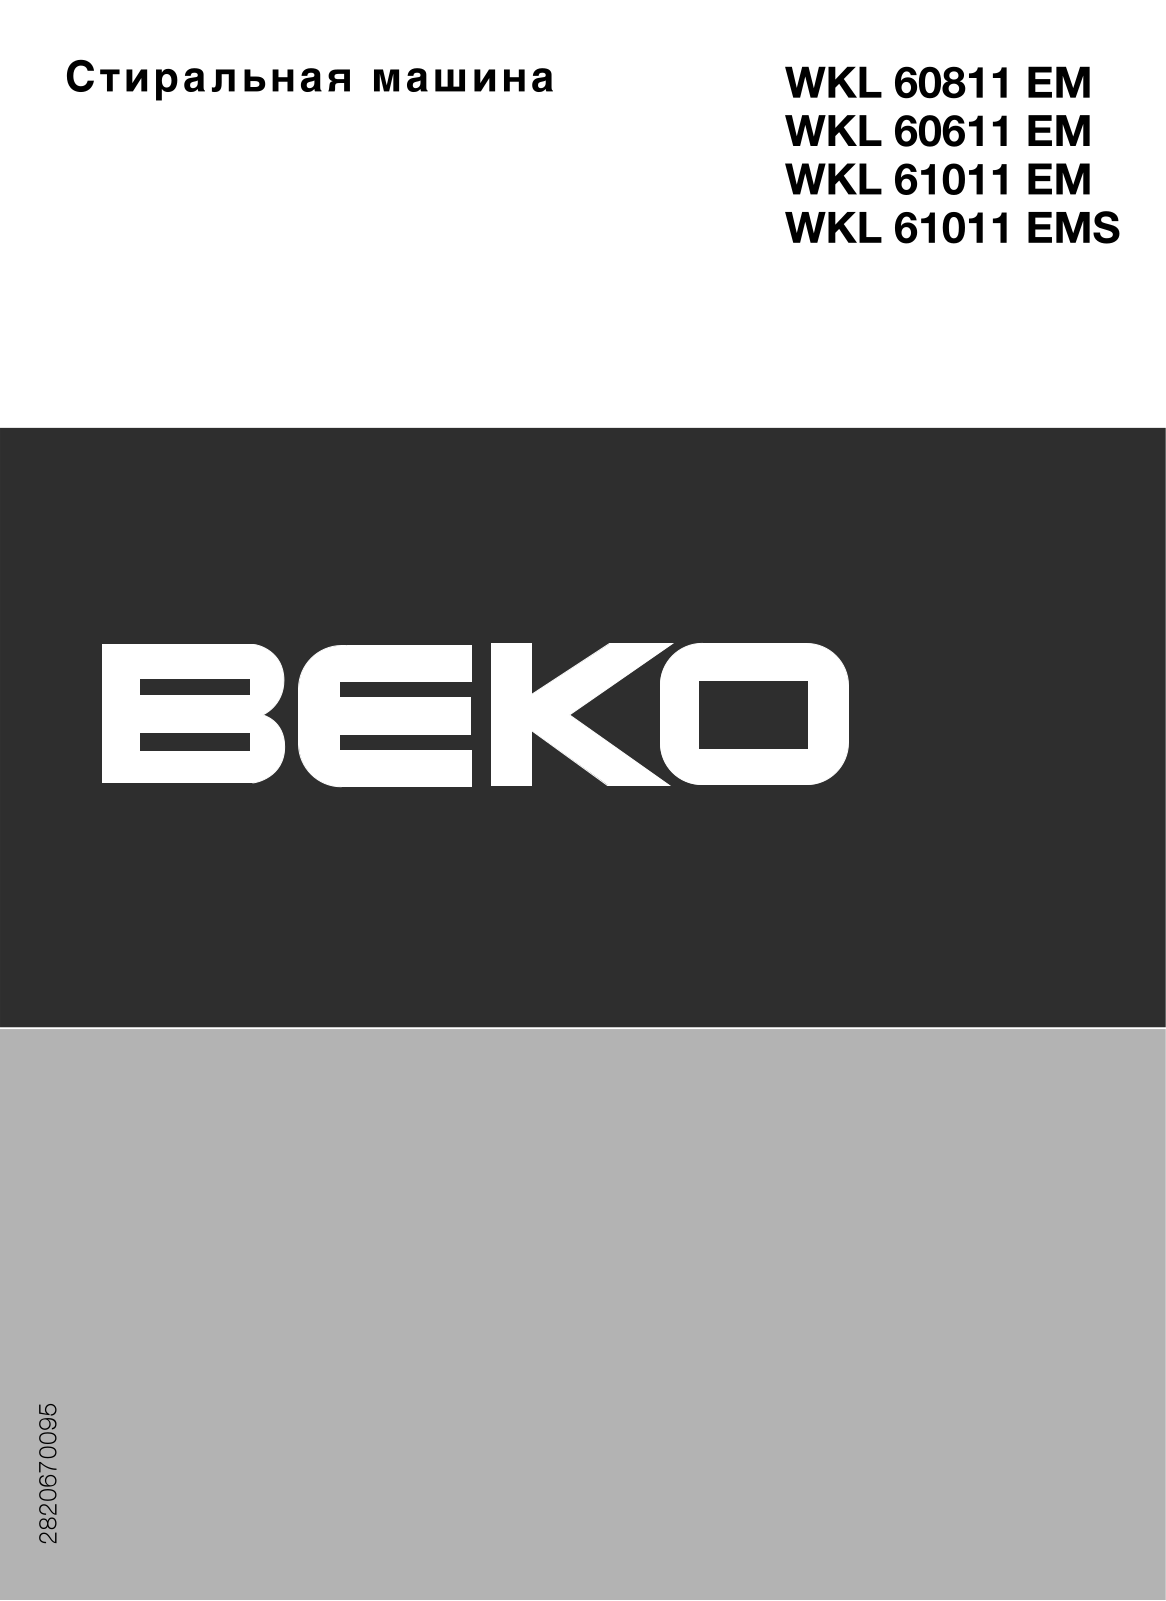 Beko WKL 60811 EM, WKL 61011 EM, WKL 60611 EM, WKL 61011S User Manual